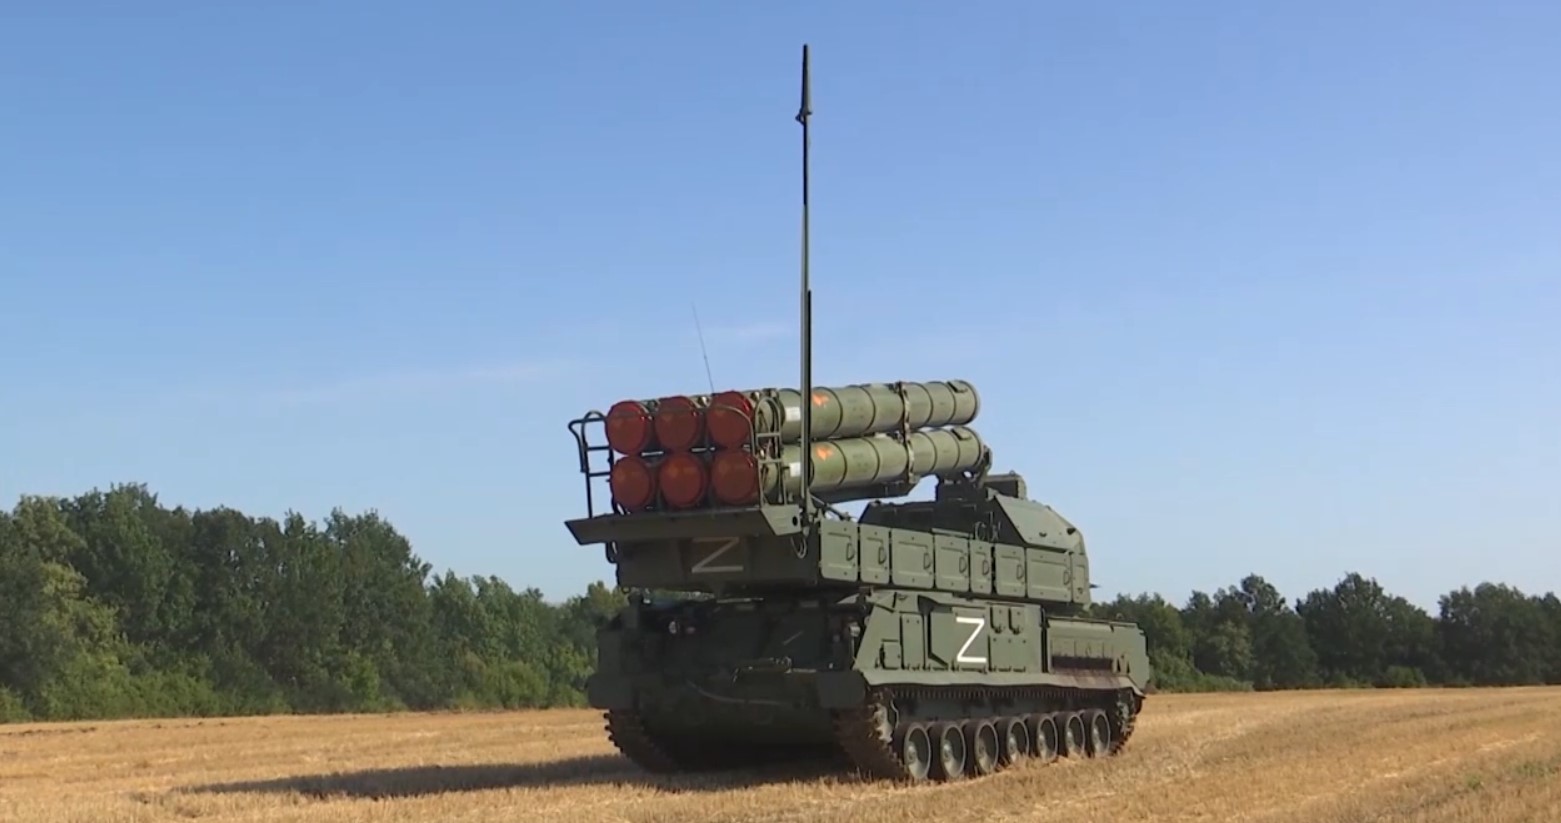 Расчеты ЗРК «Бук-М3» успешно обеспечивают ПВО российских войск в ходе СВО на Украине